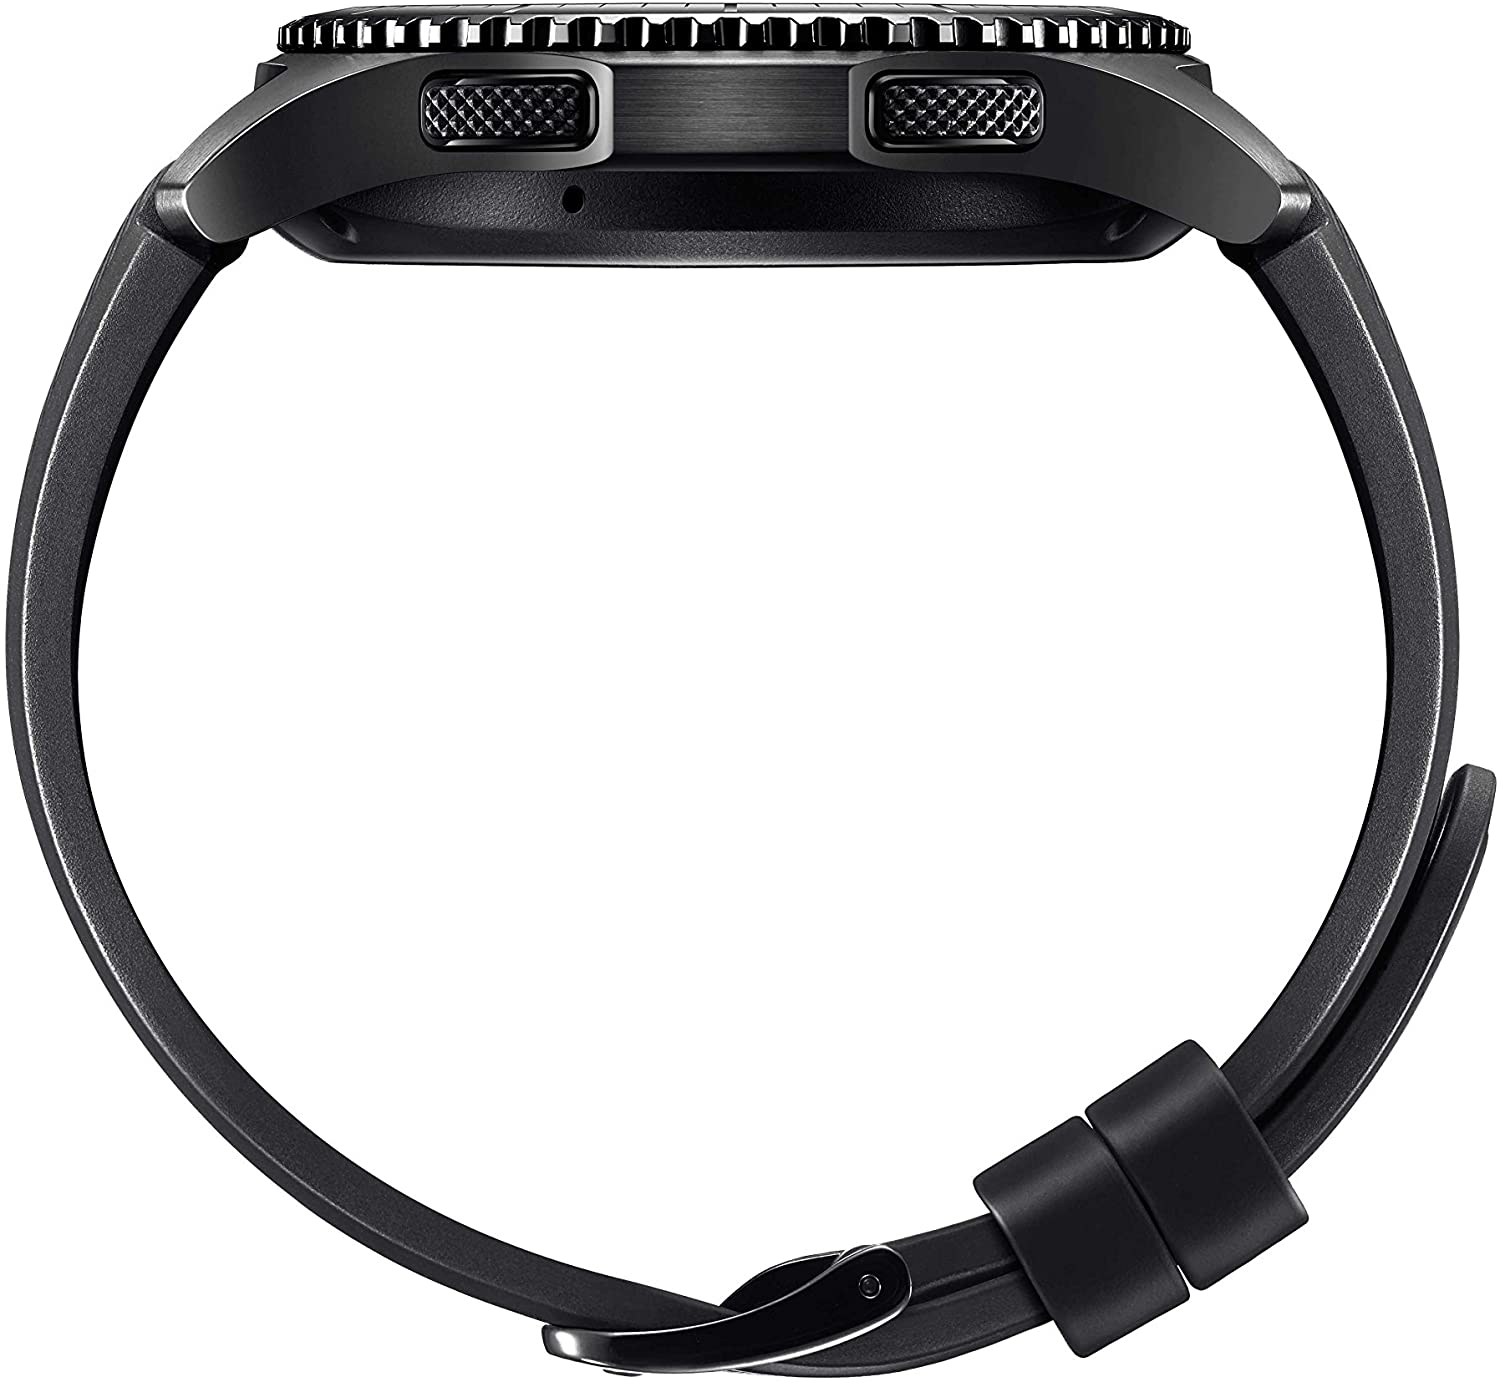 Samsung Gear S3 Frontier Smartwatch Schermo 1.3